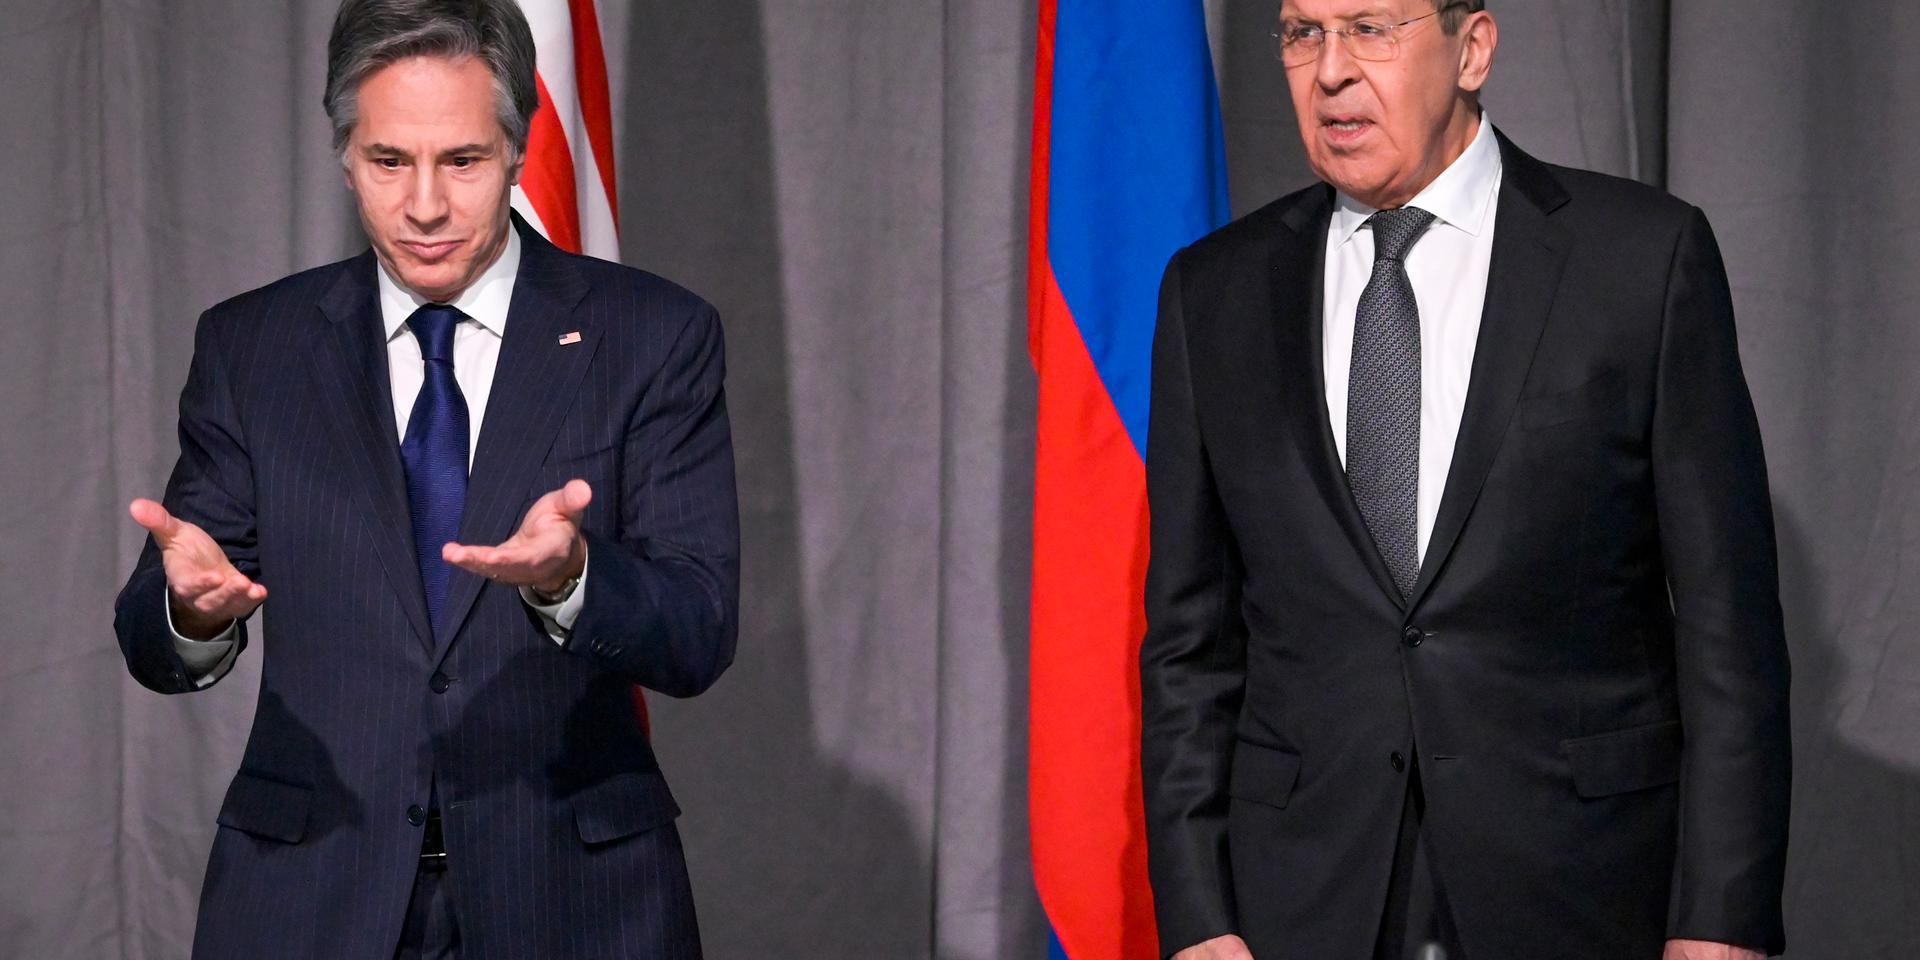 USA:s utrikesminister Antony Blinken och Rysslands utrikesminister Sergej Lavrov vid dagens möte under OSSE-konferensen utanför Stockholm.